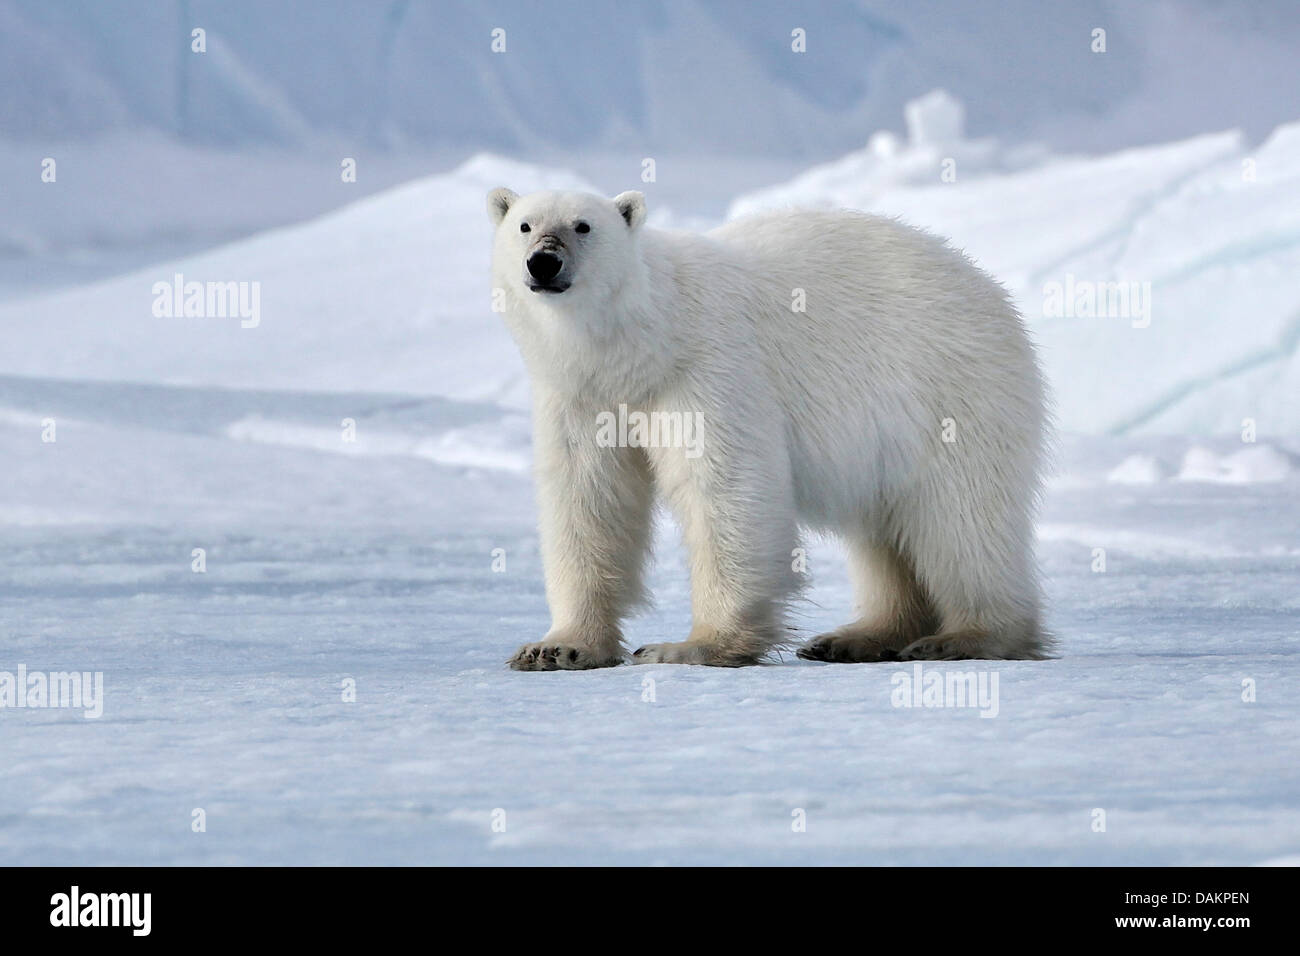 polar bear (Ursus maritimus), standing in arctic landscape, Canada, Nunavut Stock Photo